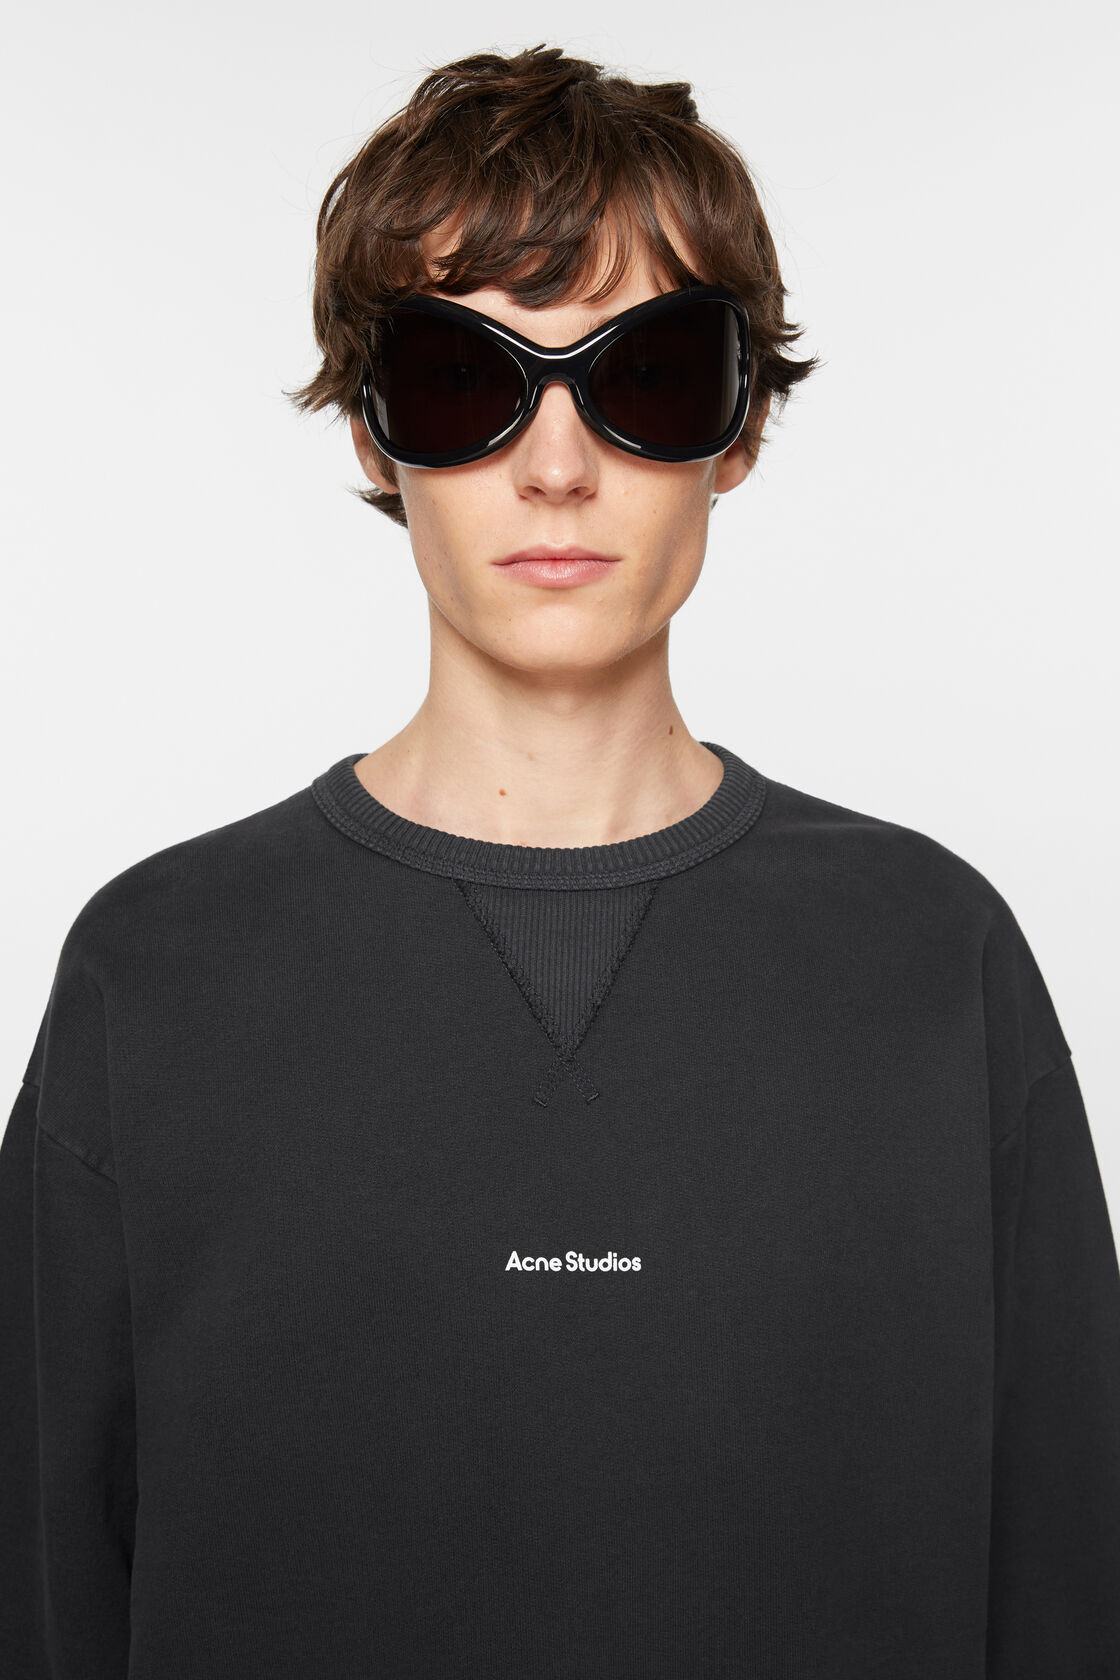 ACNE STUDIOS Stamp Oversize Sweatshirt in Black S